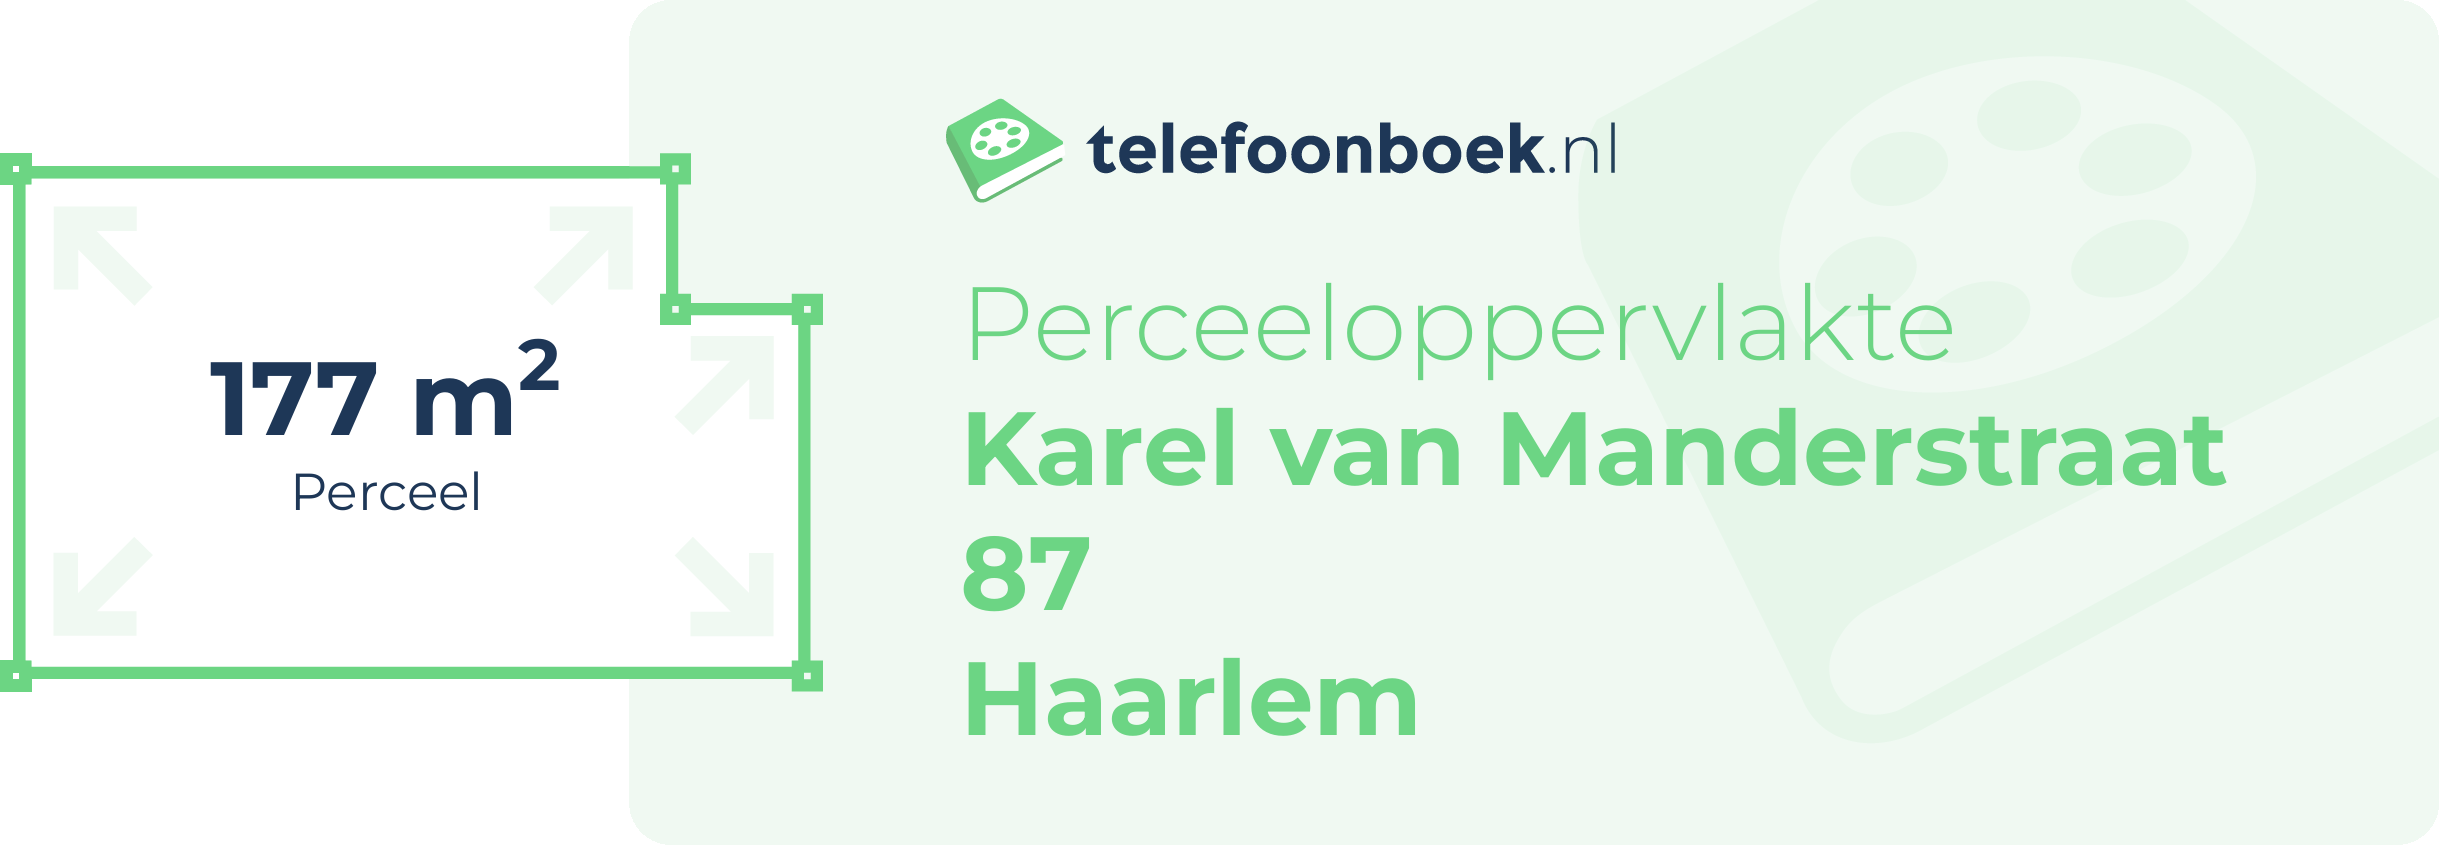 Perceeloppervlakte Karel Van Manderstraat 87 Haarlem